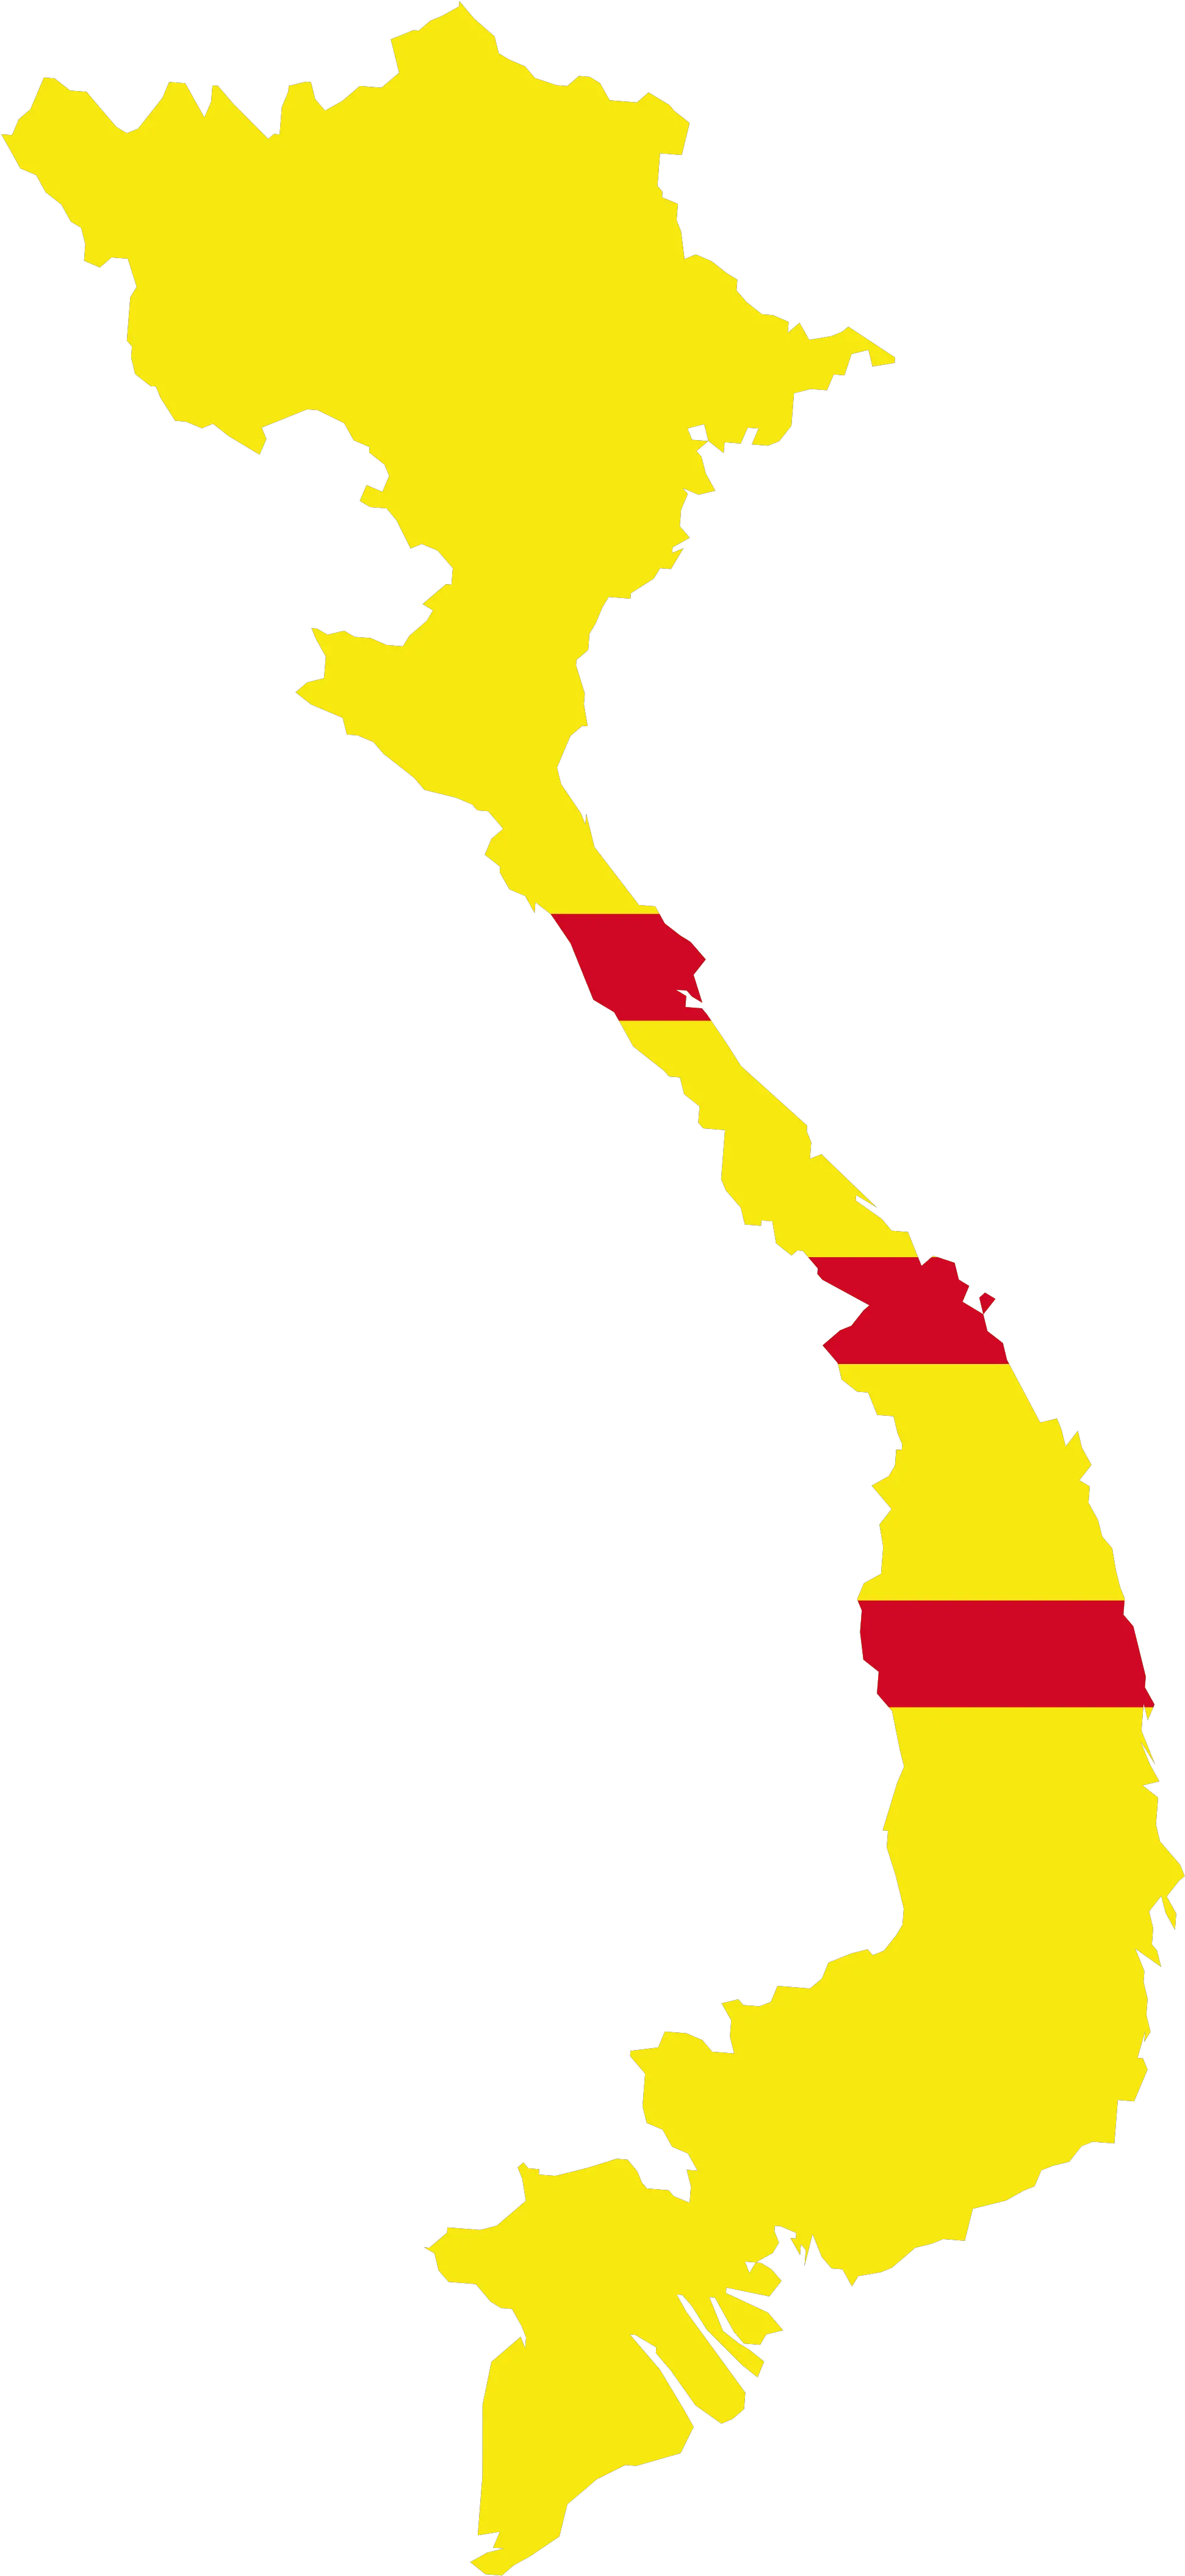 Open Png Vietnam Flag